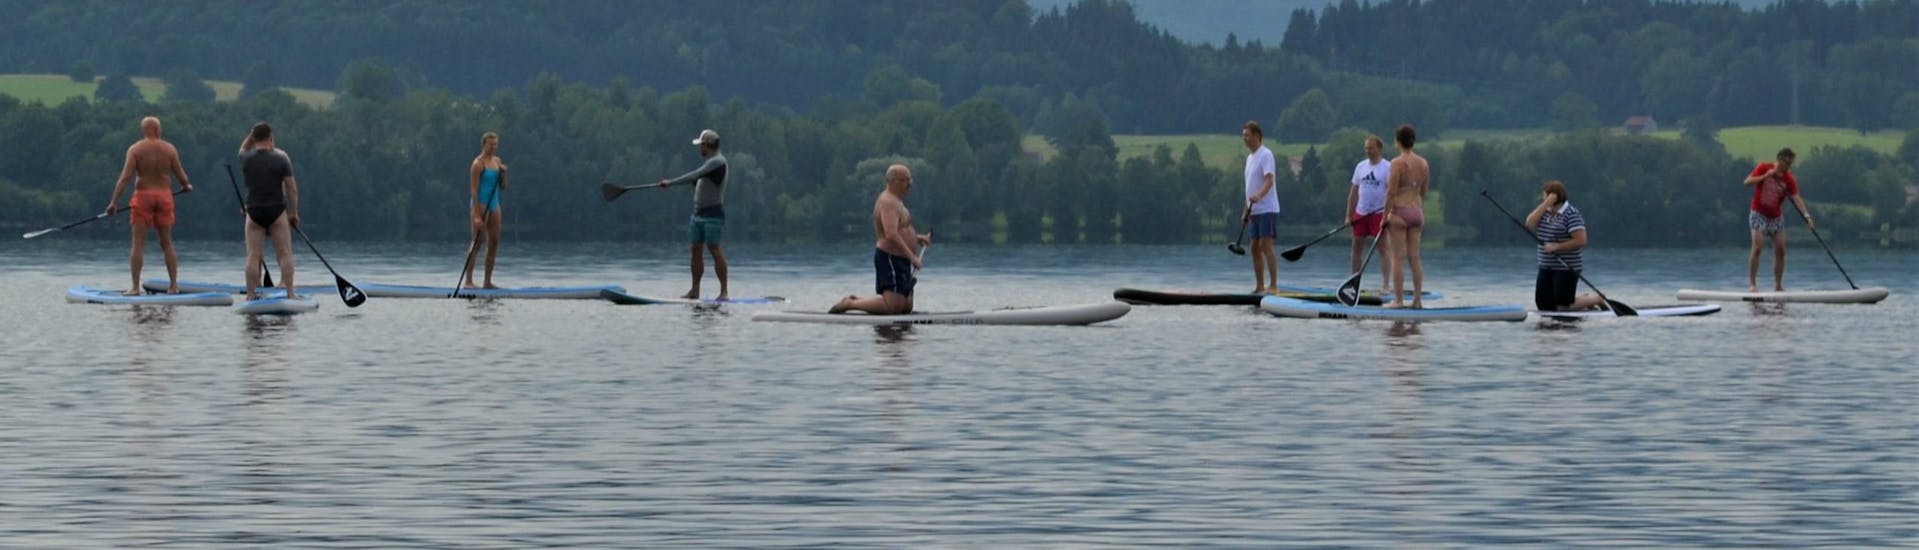 Cours de stand up paddle à Murnau am Staffelsee (dès 8 ans) pour Tous niveaux.